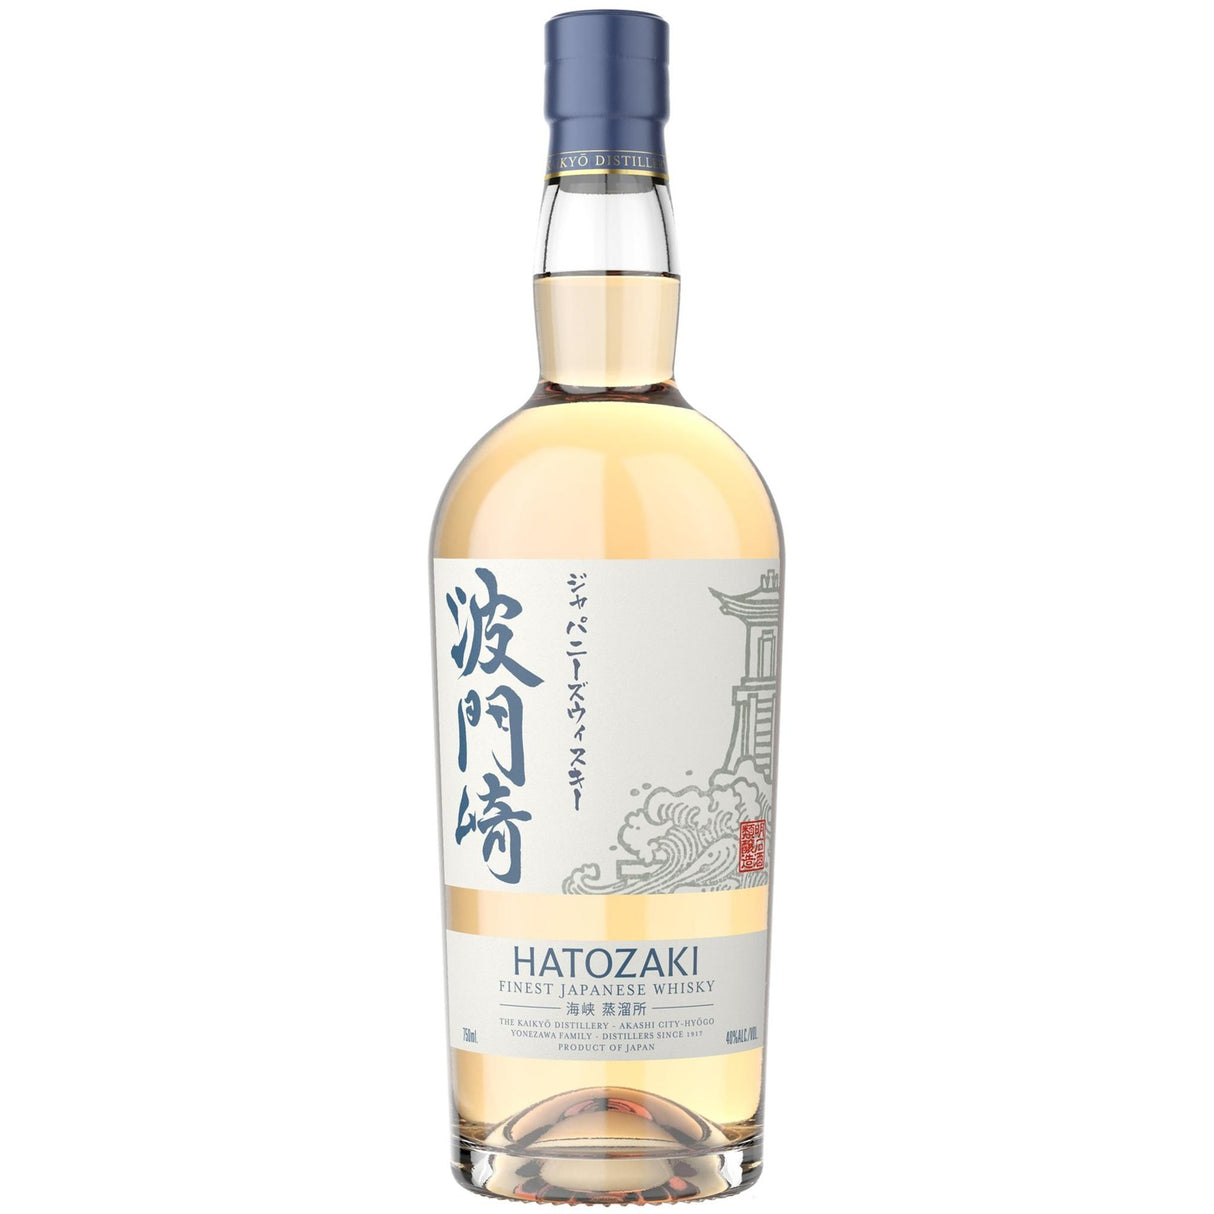 Hatozaki Whisky - Liquor Geeks